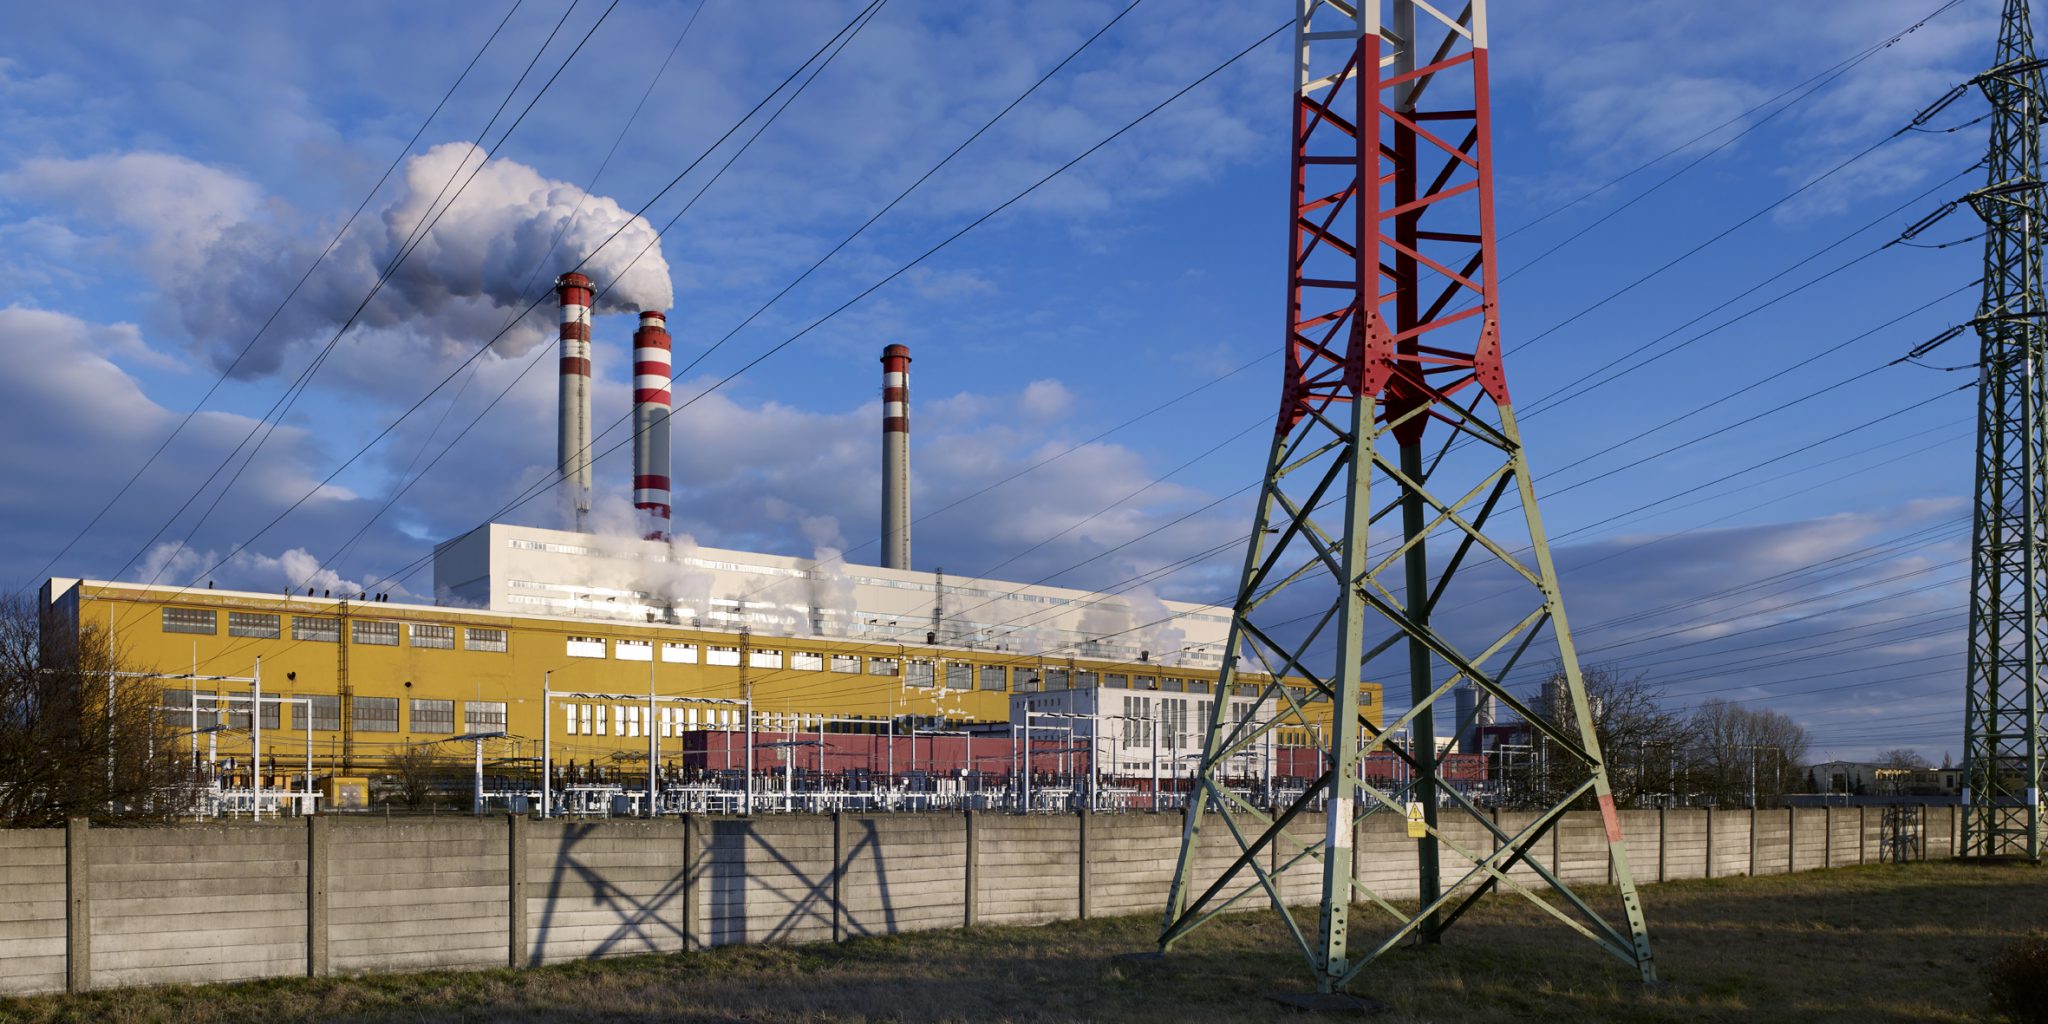 Interessante Fakten aus den EPH-Ergebnissen: Dividende über 37 Milliarden Kronen, begrenzte Auswirkungen unerwarteter Steuern und Streit mit russischem Kohlelieferanten